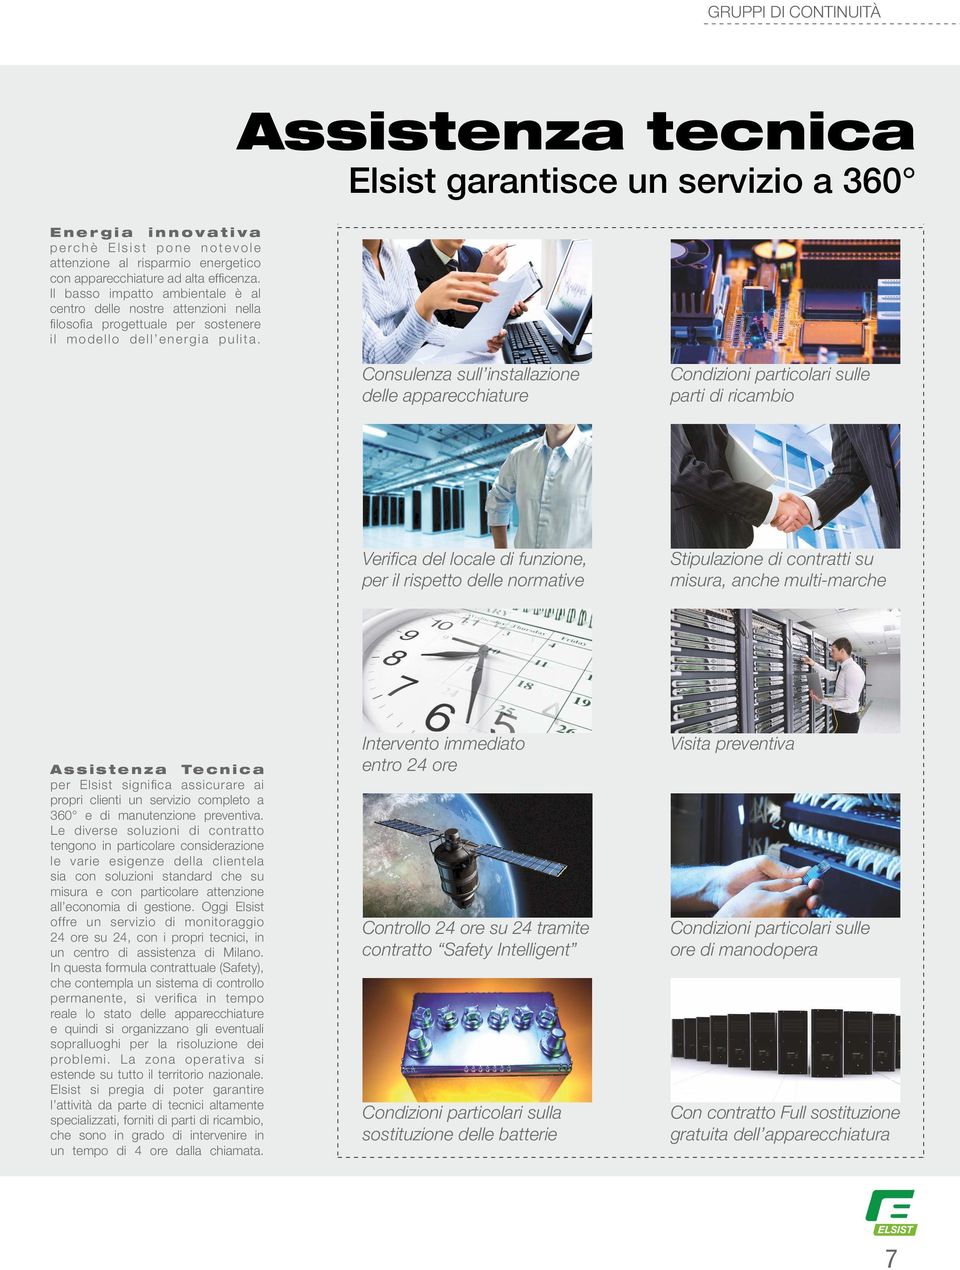 Assistenza tecnica Elsist garantisce un servizio a 360 Consulenza sull installazione delle apparecchiature Condizioni particolari sulle parti di ricambio Verifica del locale di funzione, per il